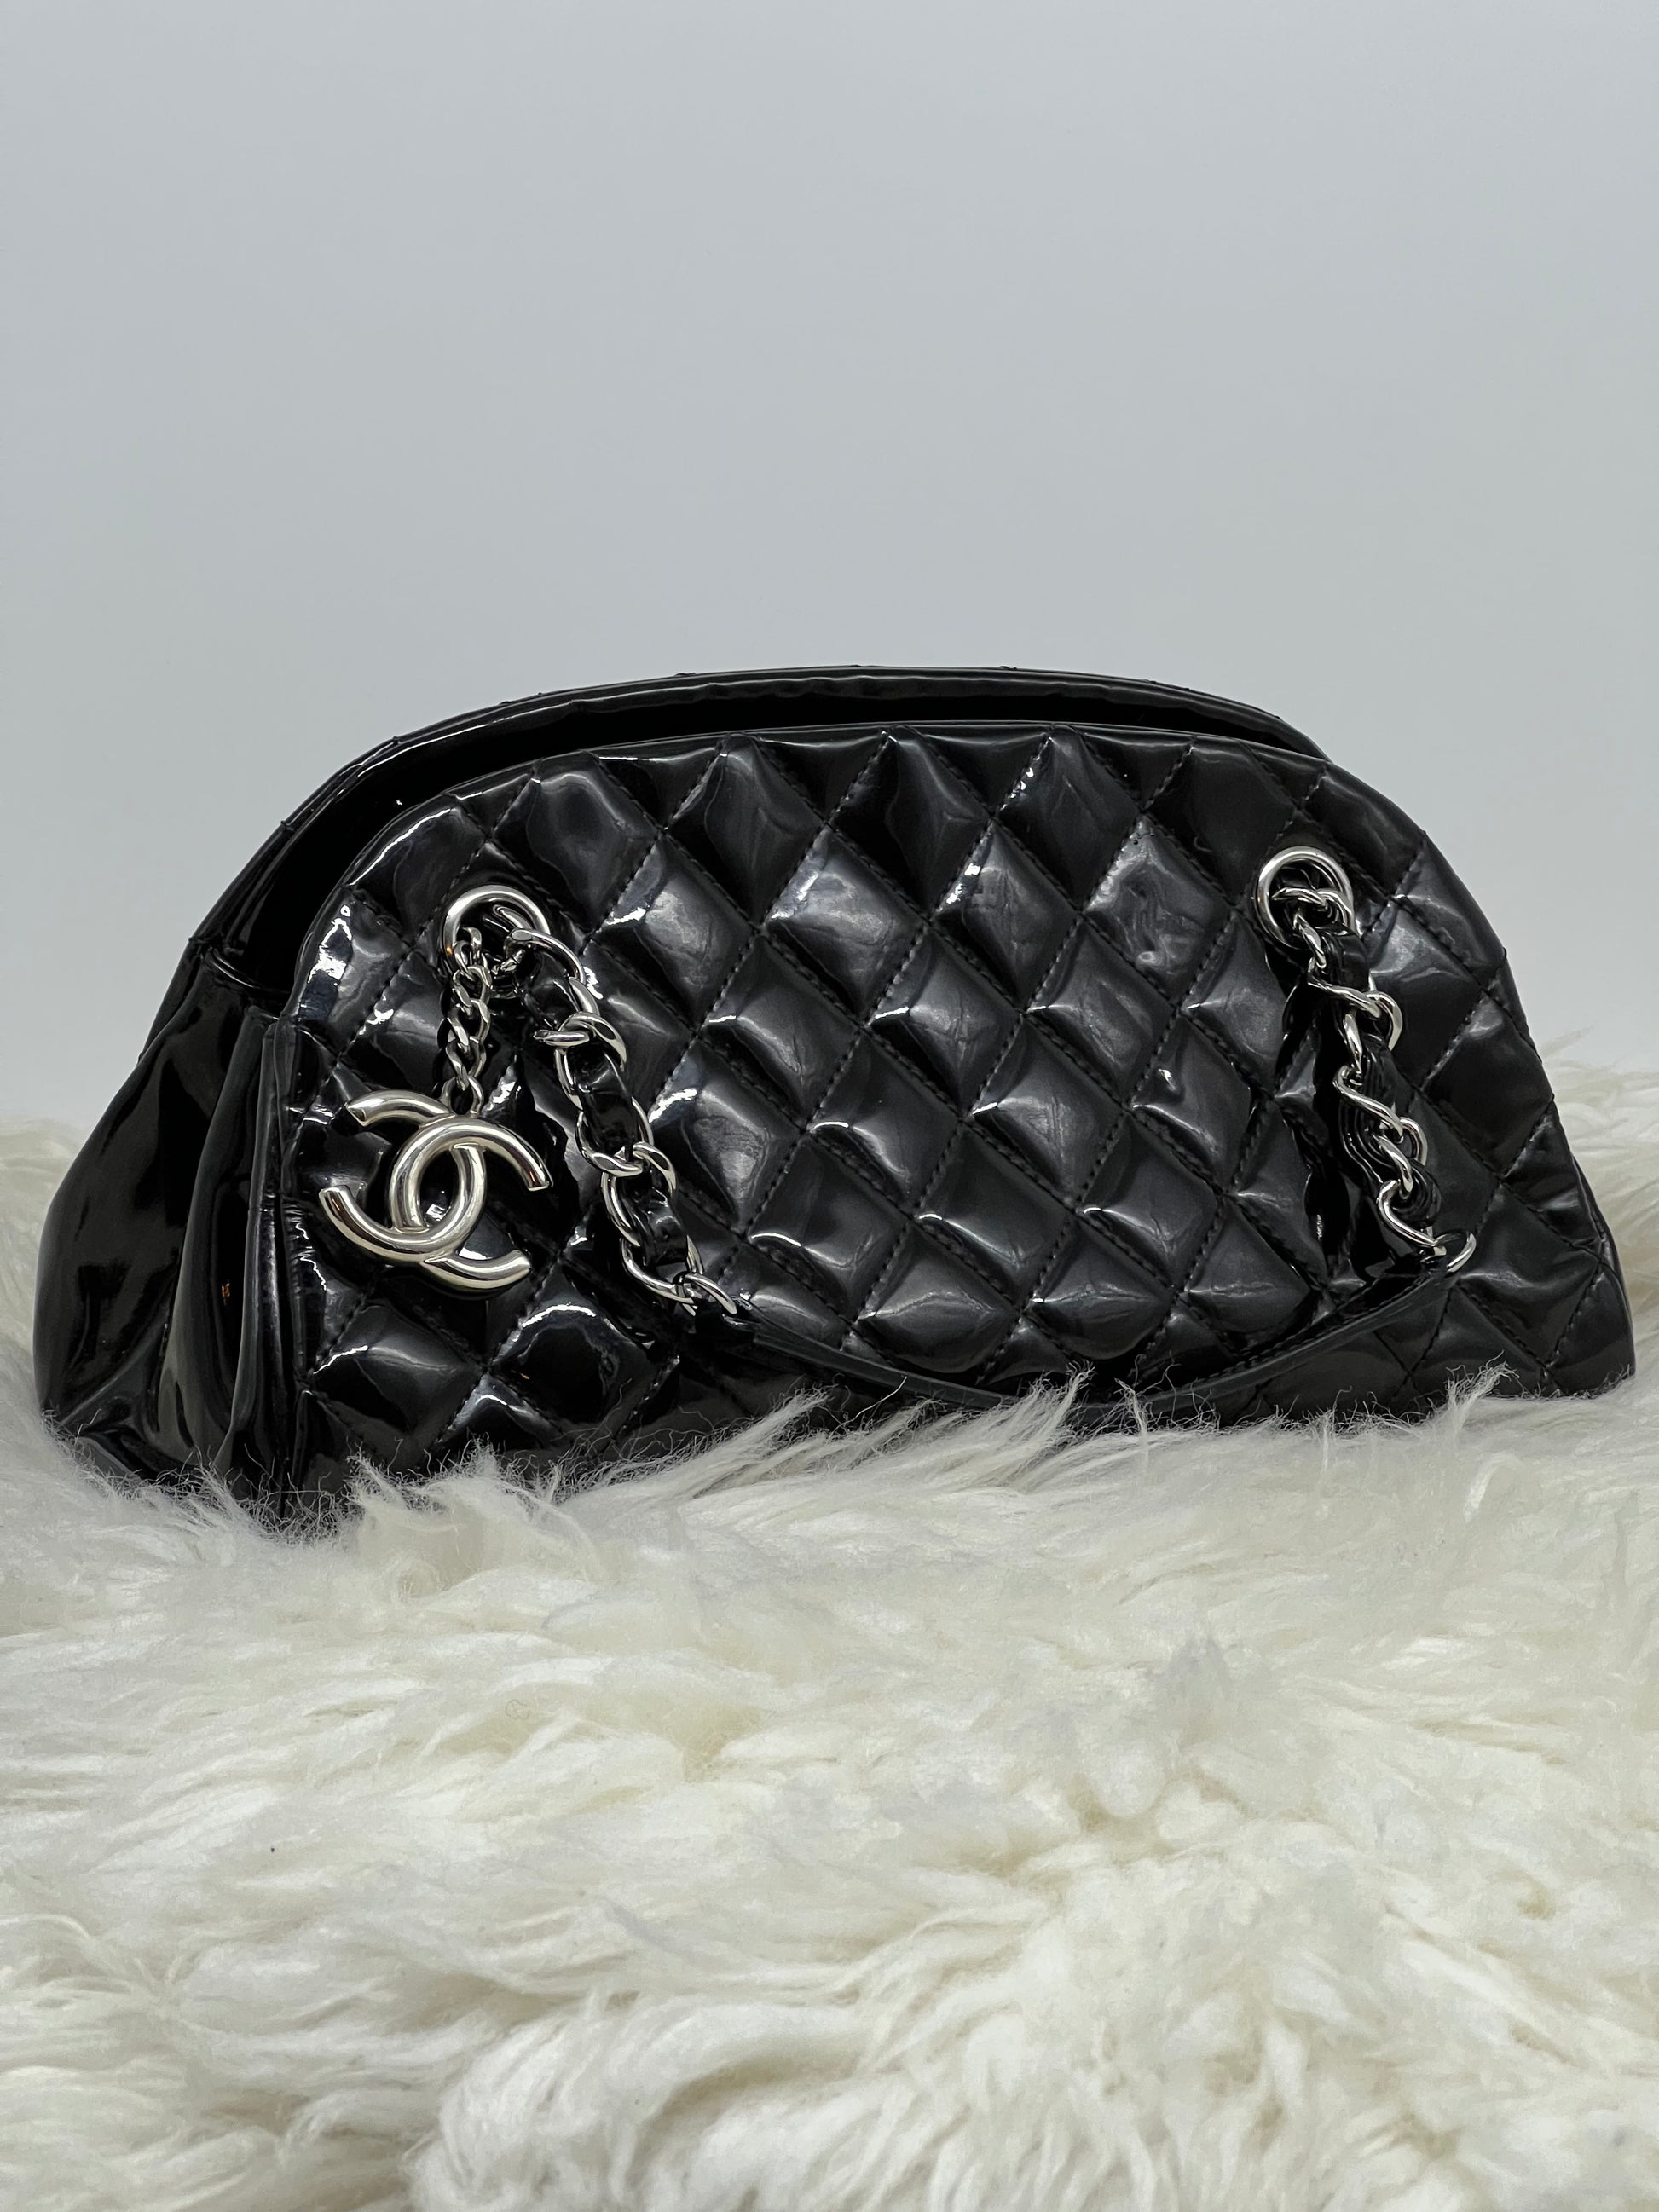 Chanel Travel bag Tasche New York Paris 2005/2006 Vintage Leather Leder